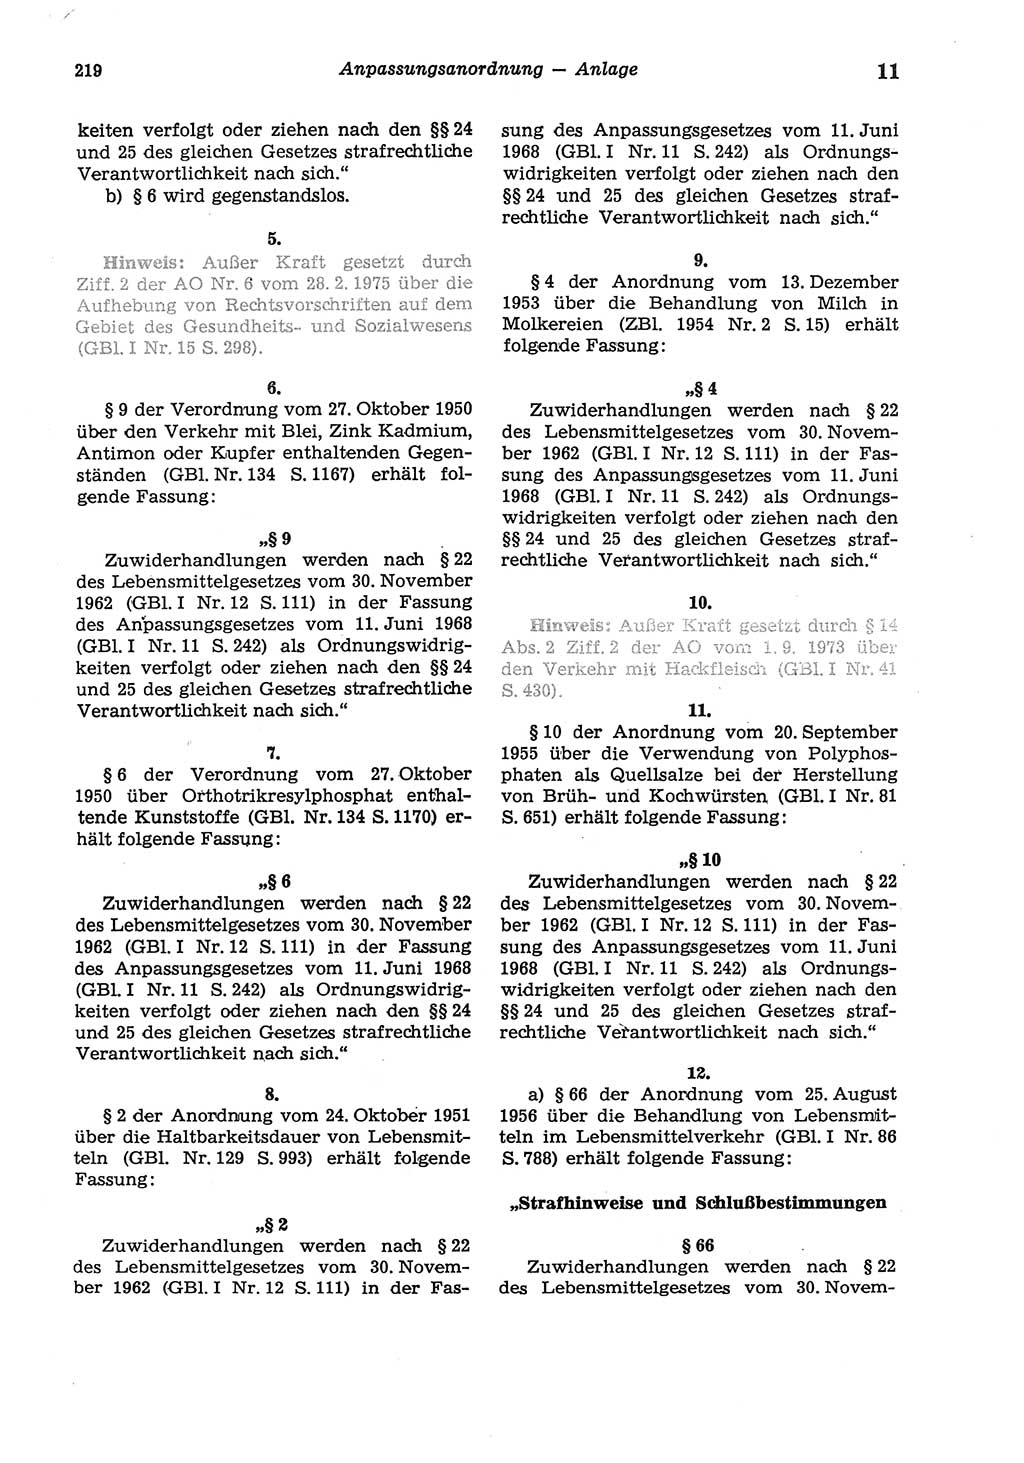 Strafgesetzbuch (StGB) der Deutschen Demokratischen Republik (DDR) und angrenzende Gesetze und Bestimmungen 1975, Seite 219 (StGB DDR Ges. Best. 1975, S. 219)